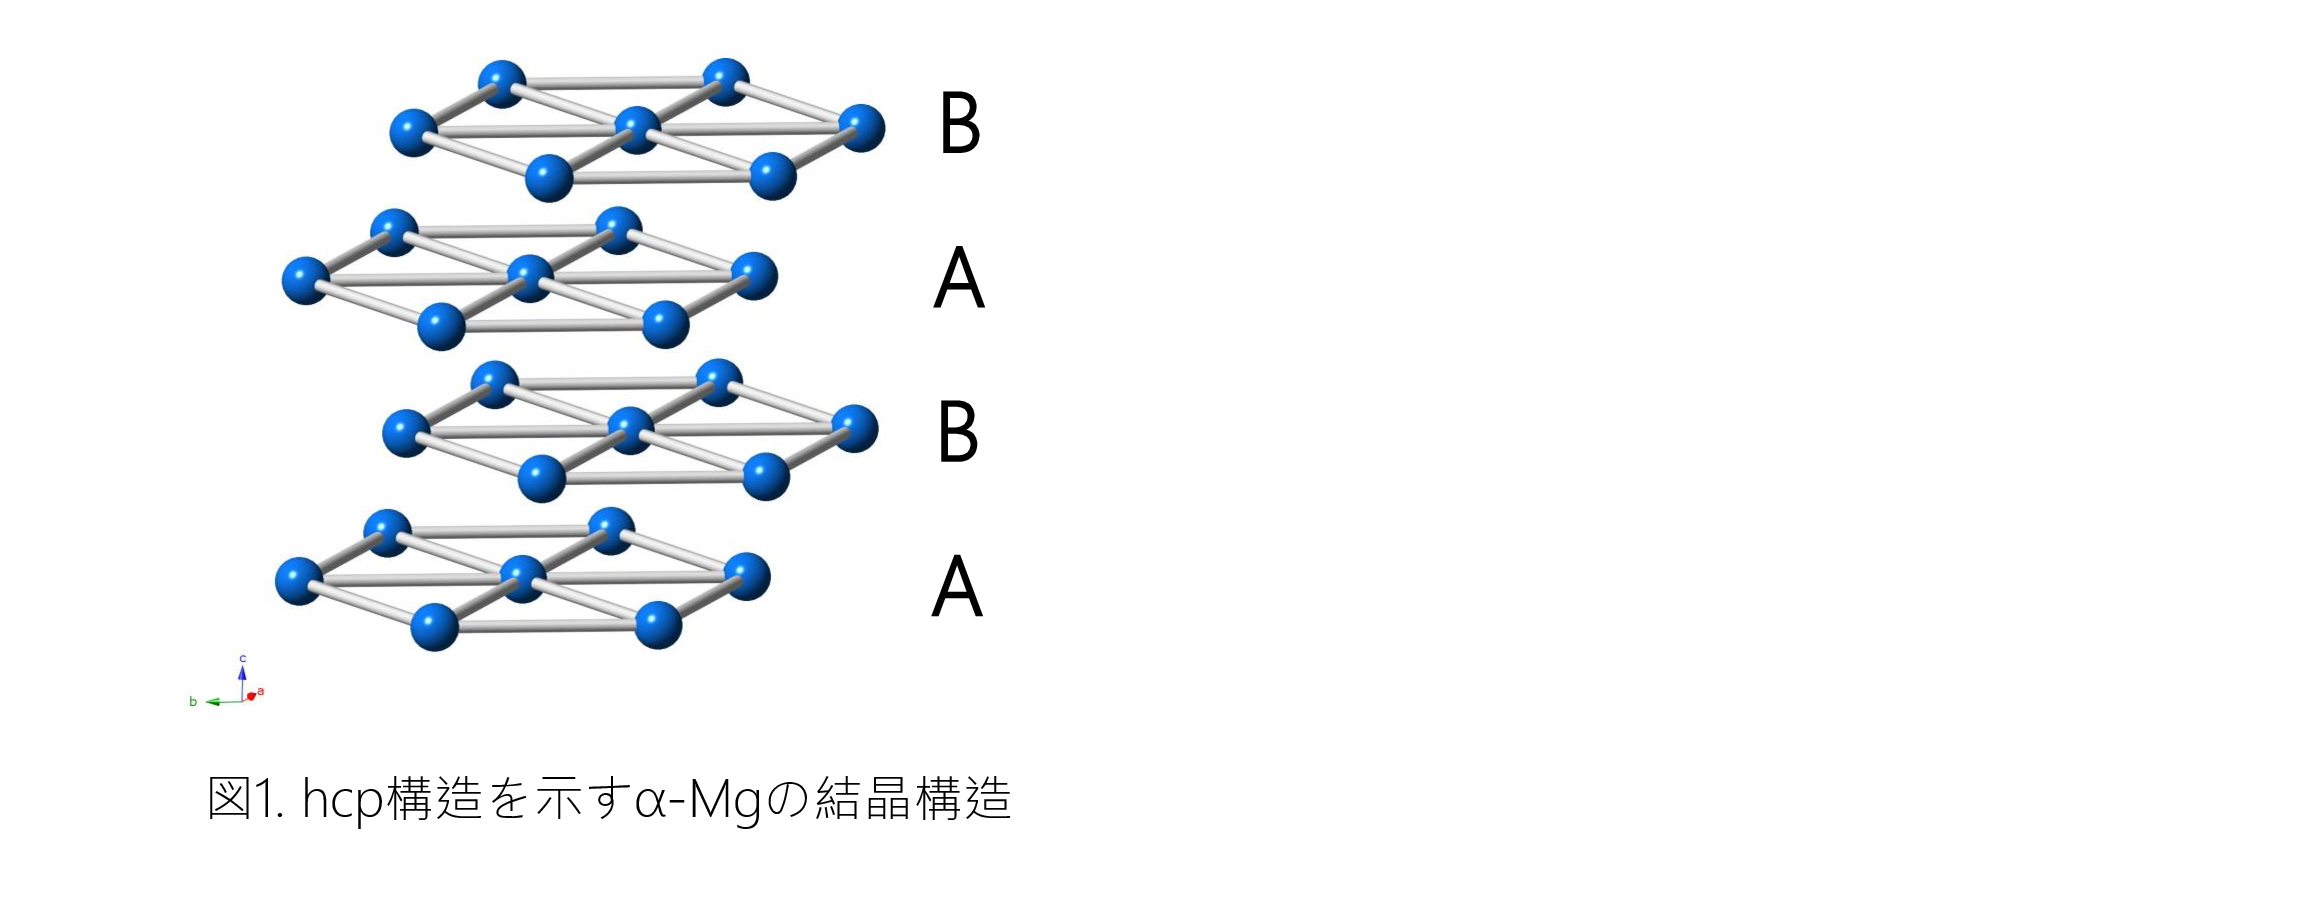 図1.hcp構造を示すα-Mgの結晶構造